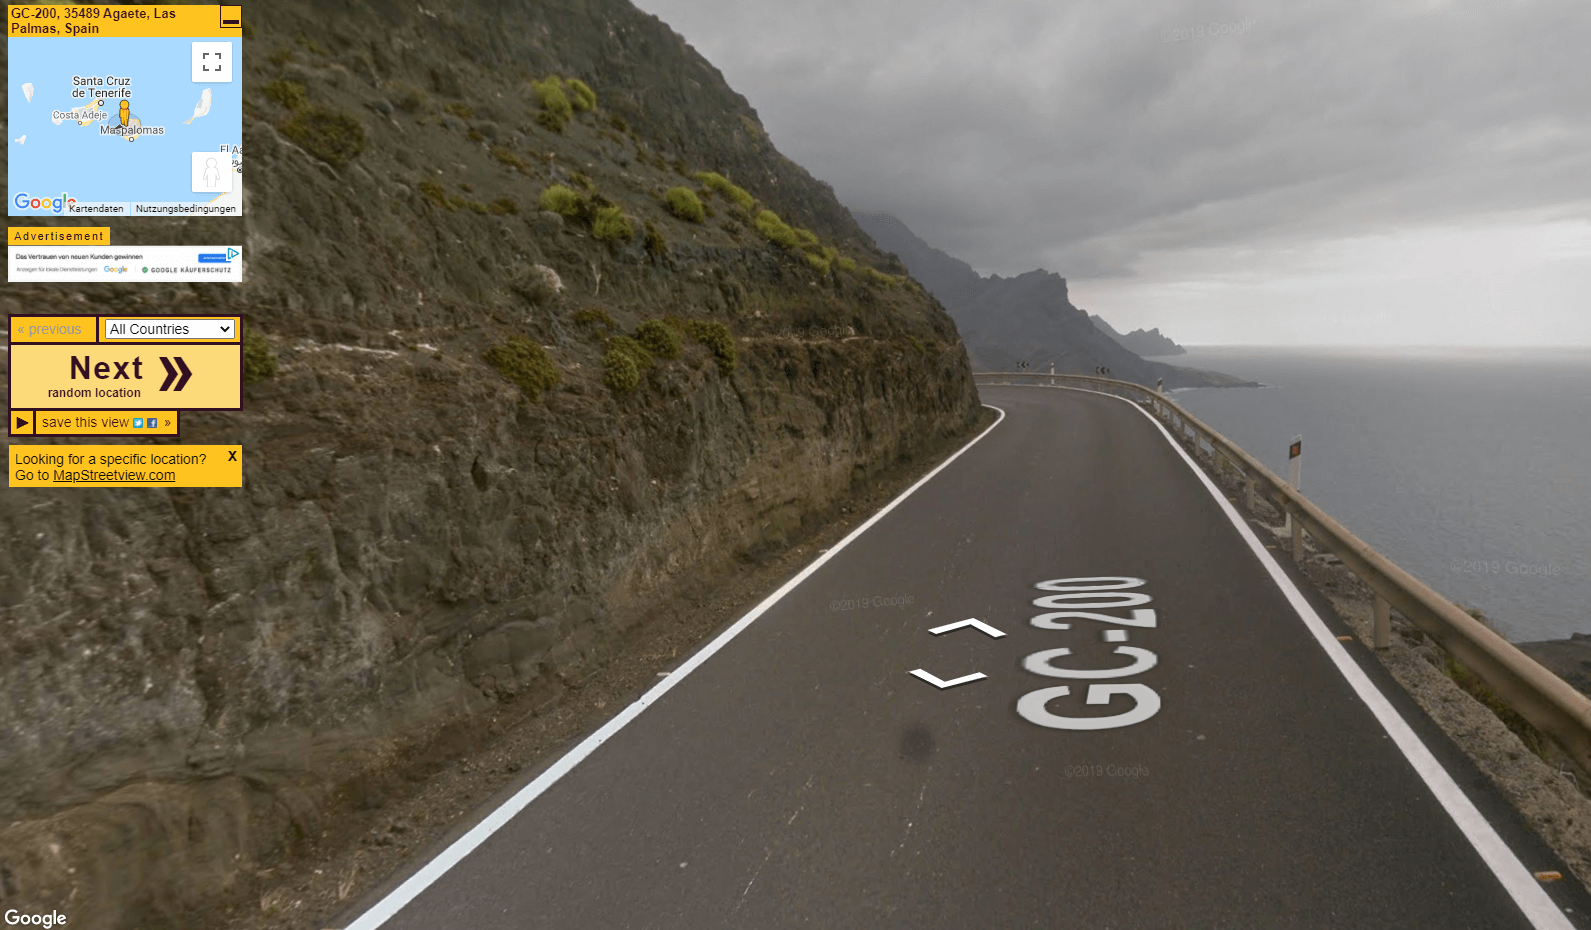 Reisen at random. Google Streetview macht’s möglich 